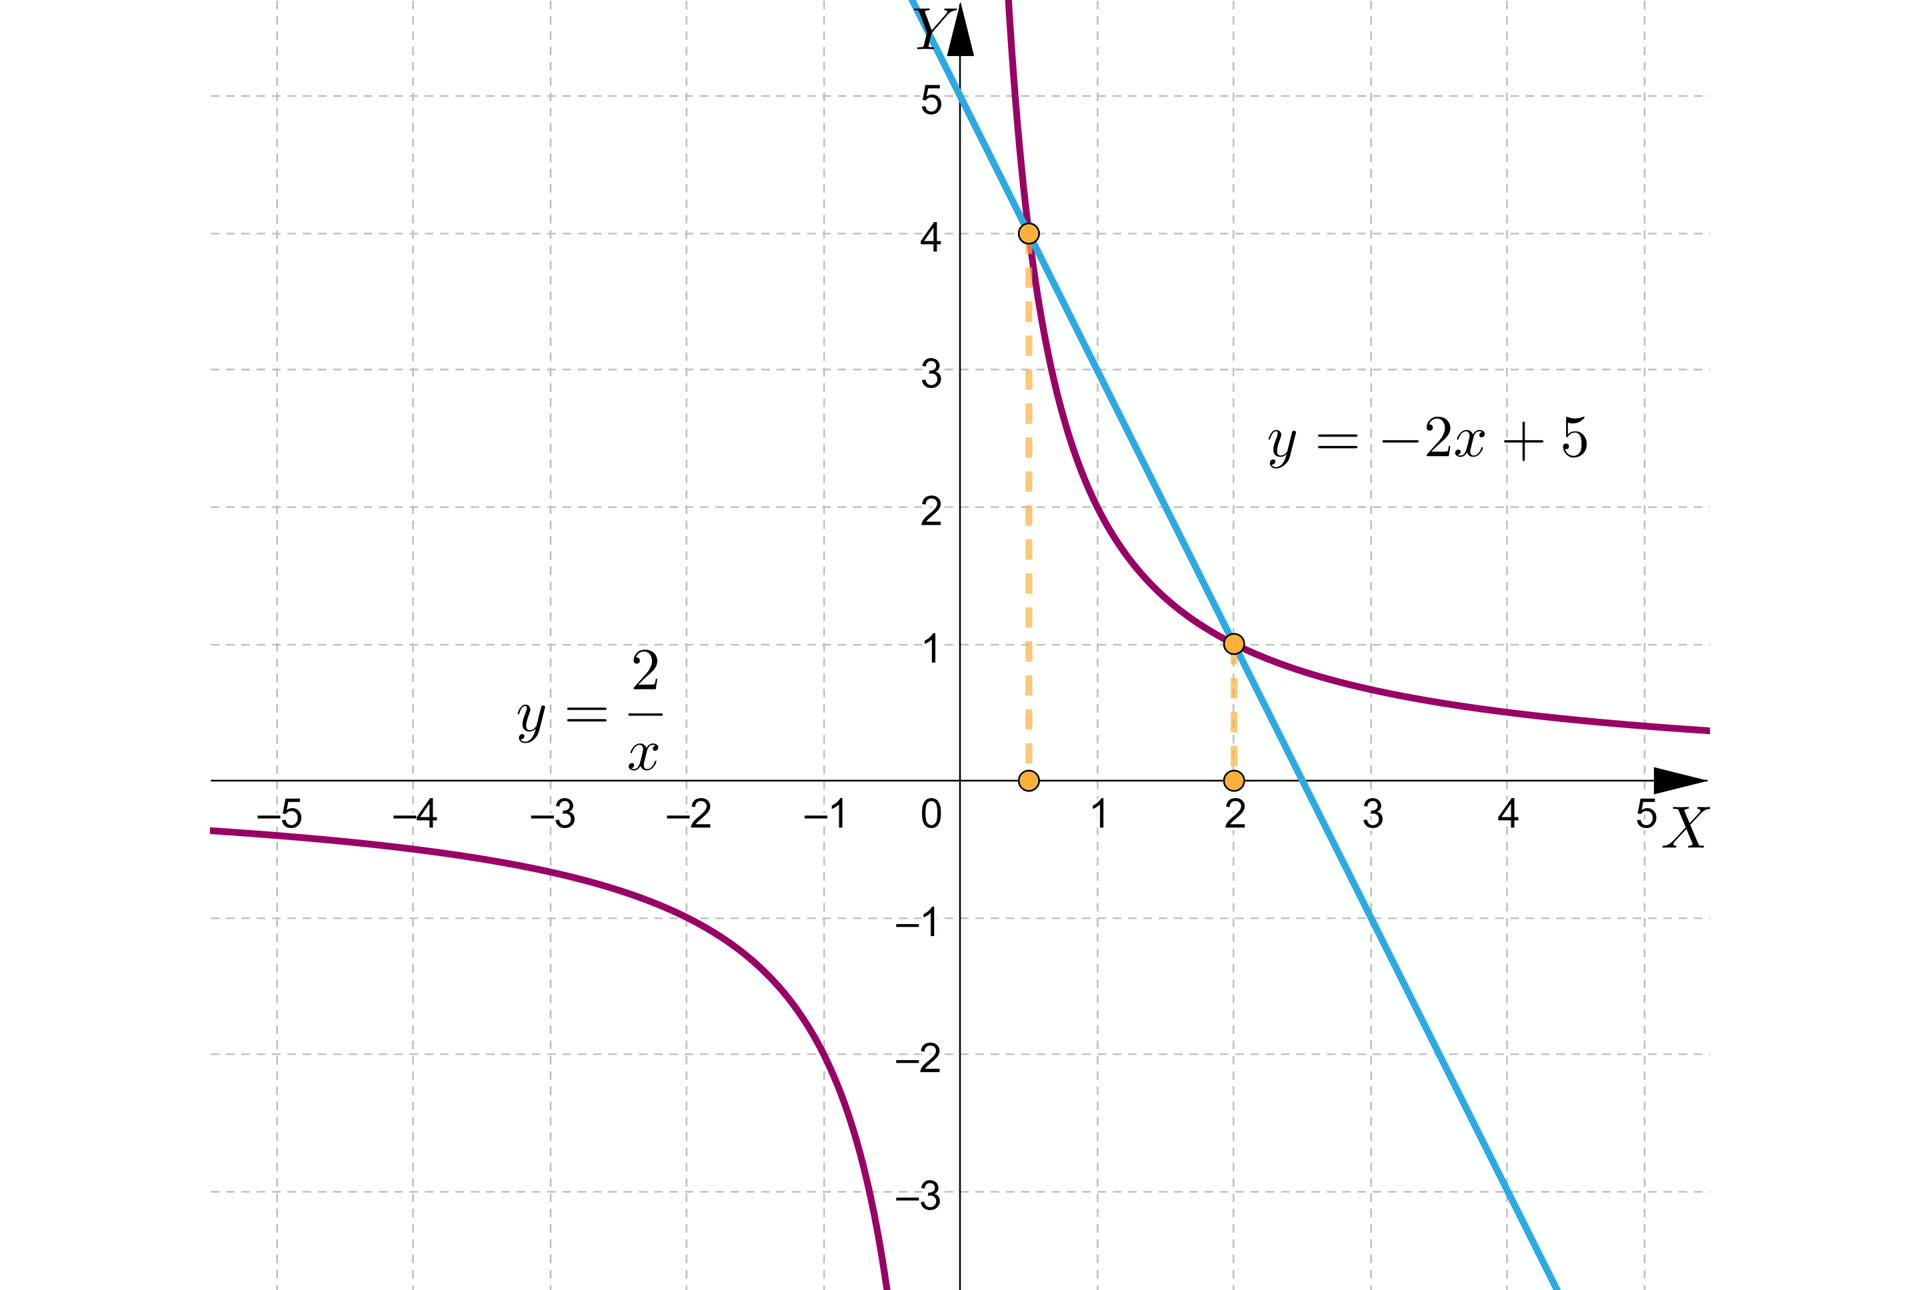 Ilustracja przedstawia poziomą oś X od minus pięciu do pięciu oraz pionową oś Y od minus czterech do czterech. Na rysunku zaznaczono także wykres malejącej funkcji homograficznej oraz wykres malejącej funkcji liniowej. Funkcja liniowa przechodzi przez punkty nawias zero średnik pięć koniec nawiasu oraz nawias trzy średnik minus jeden koniec nawiasu. Wykres funkcji homograficznej przechodzi przez punkty nawias minus dwa średnik minus jeden koniec nawiasu oraz nawias jeden średnik dwa koniec nawiasu. Oba wykresy funkcji przecinają się w dwóch punktach, nawias zero przecinek pięć średnik cztery koniec nawiasu oraz nawias dwa średnik jeden koniec nawiasu. 